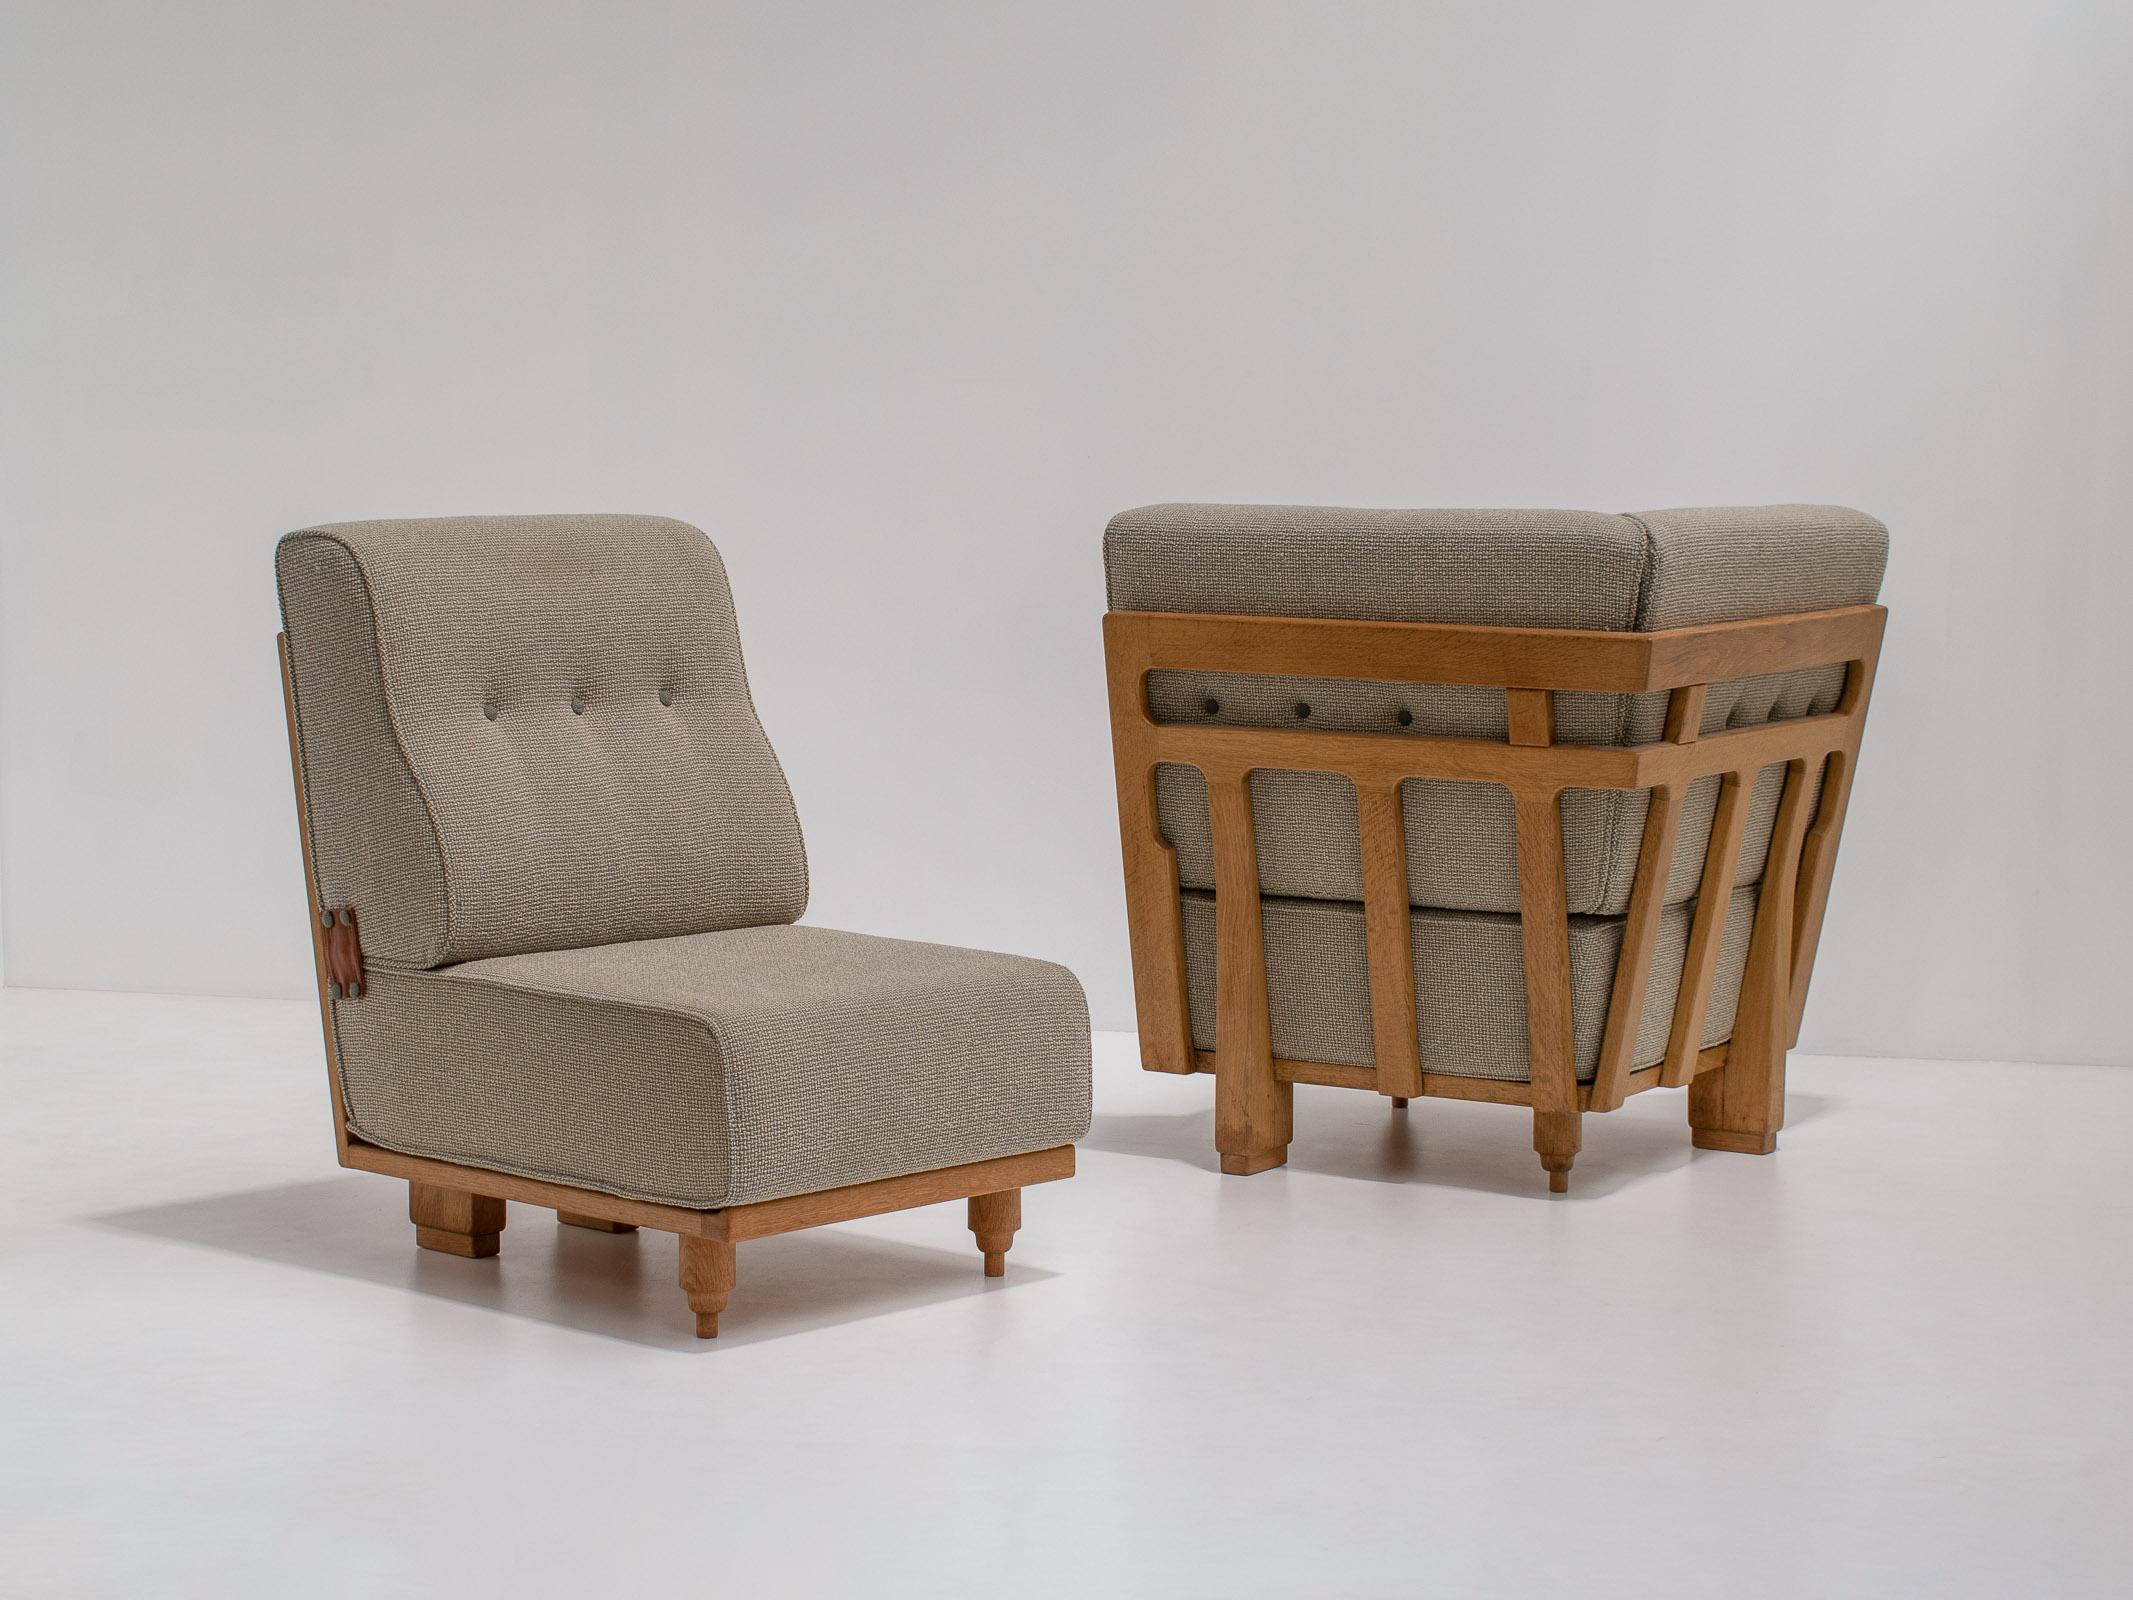 Satz von zwei Sesseln 'Elmyre' von Guillerme et Chambron, Frankreich, 1960er Jahre

Typisch für die Entwürfe von Guillerme et Chambron sind die skulpturalen Rahmen, die natürlichen MATERIALIEN und die Plüschkissen. Das Besondere an ihnen sind die